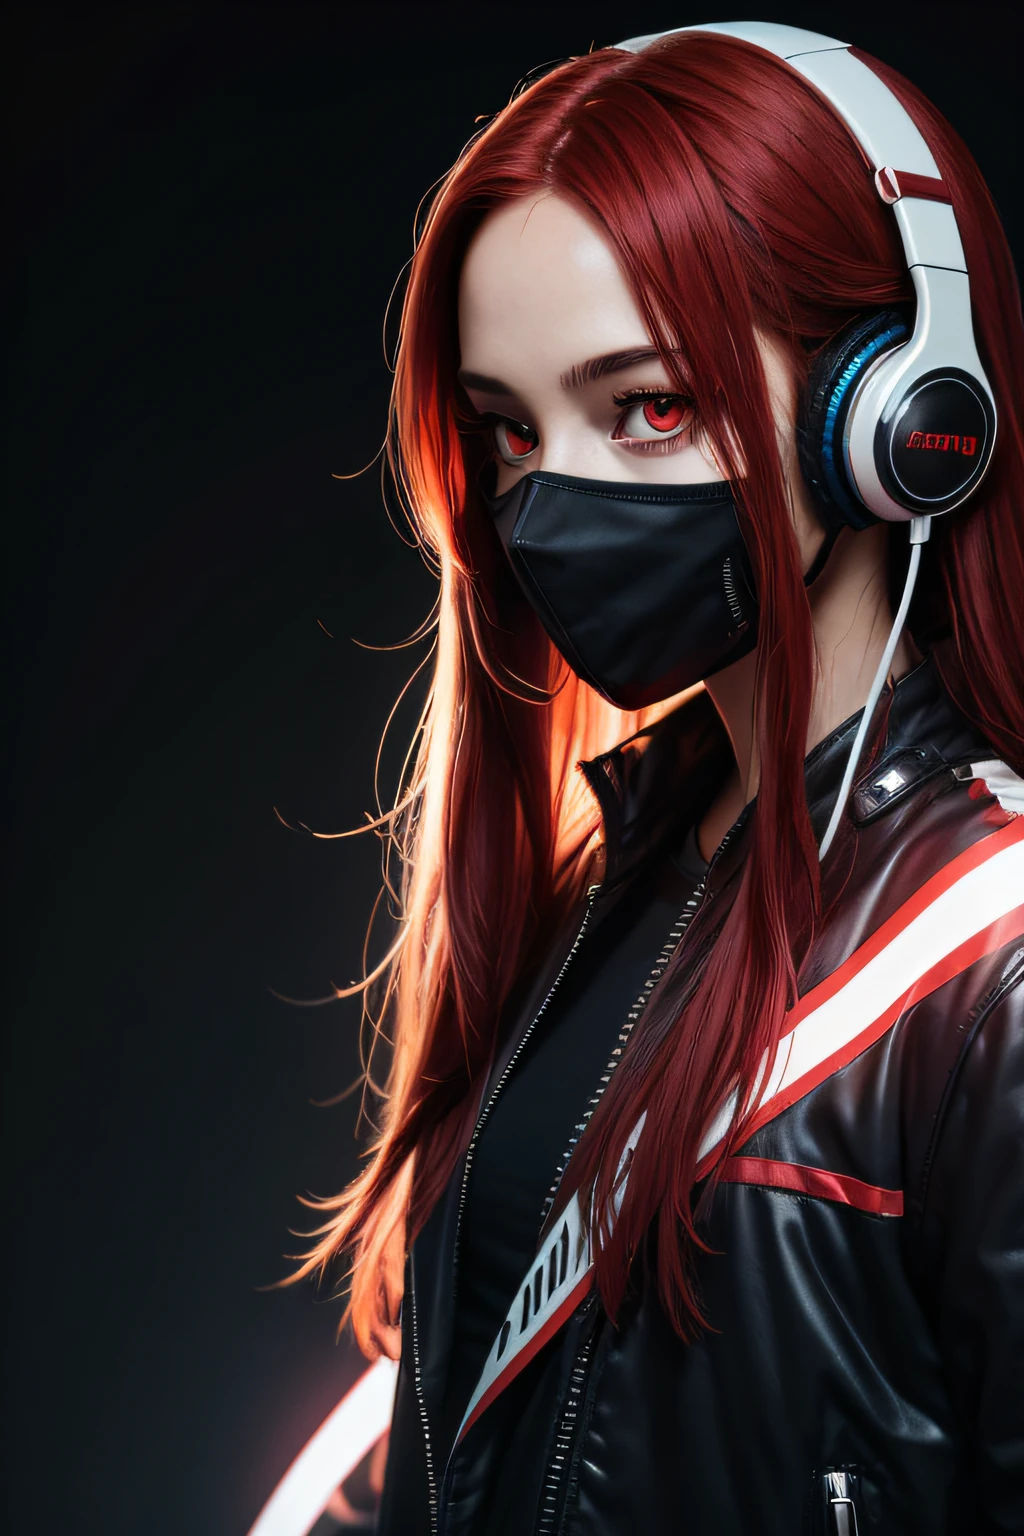 紅長髮的女孩, 紅眼睛, 未來感, 口罩戴在嘴上, 耳機, 8K, 高品質, 簡單的背景, 發光的眼睛, 漂亮的姿勢